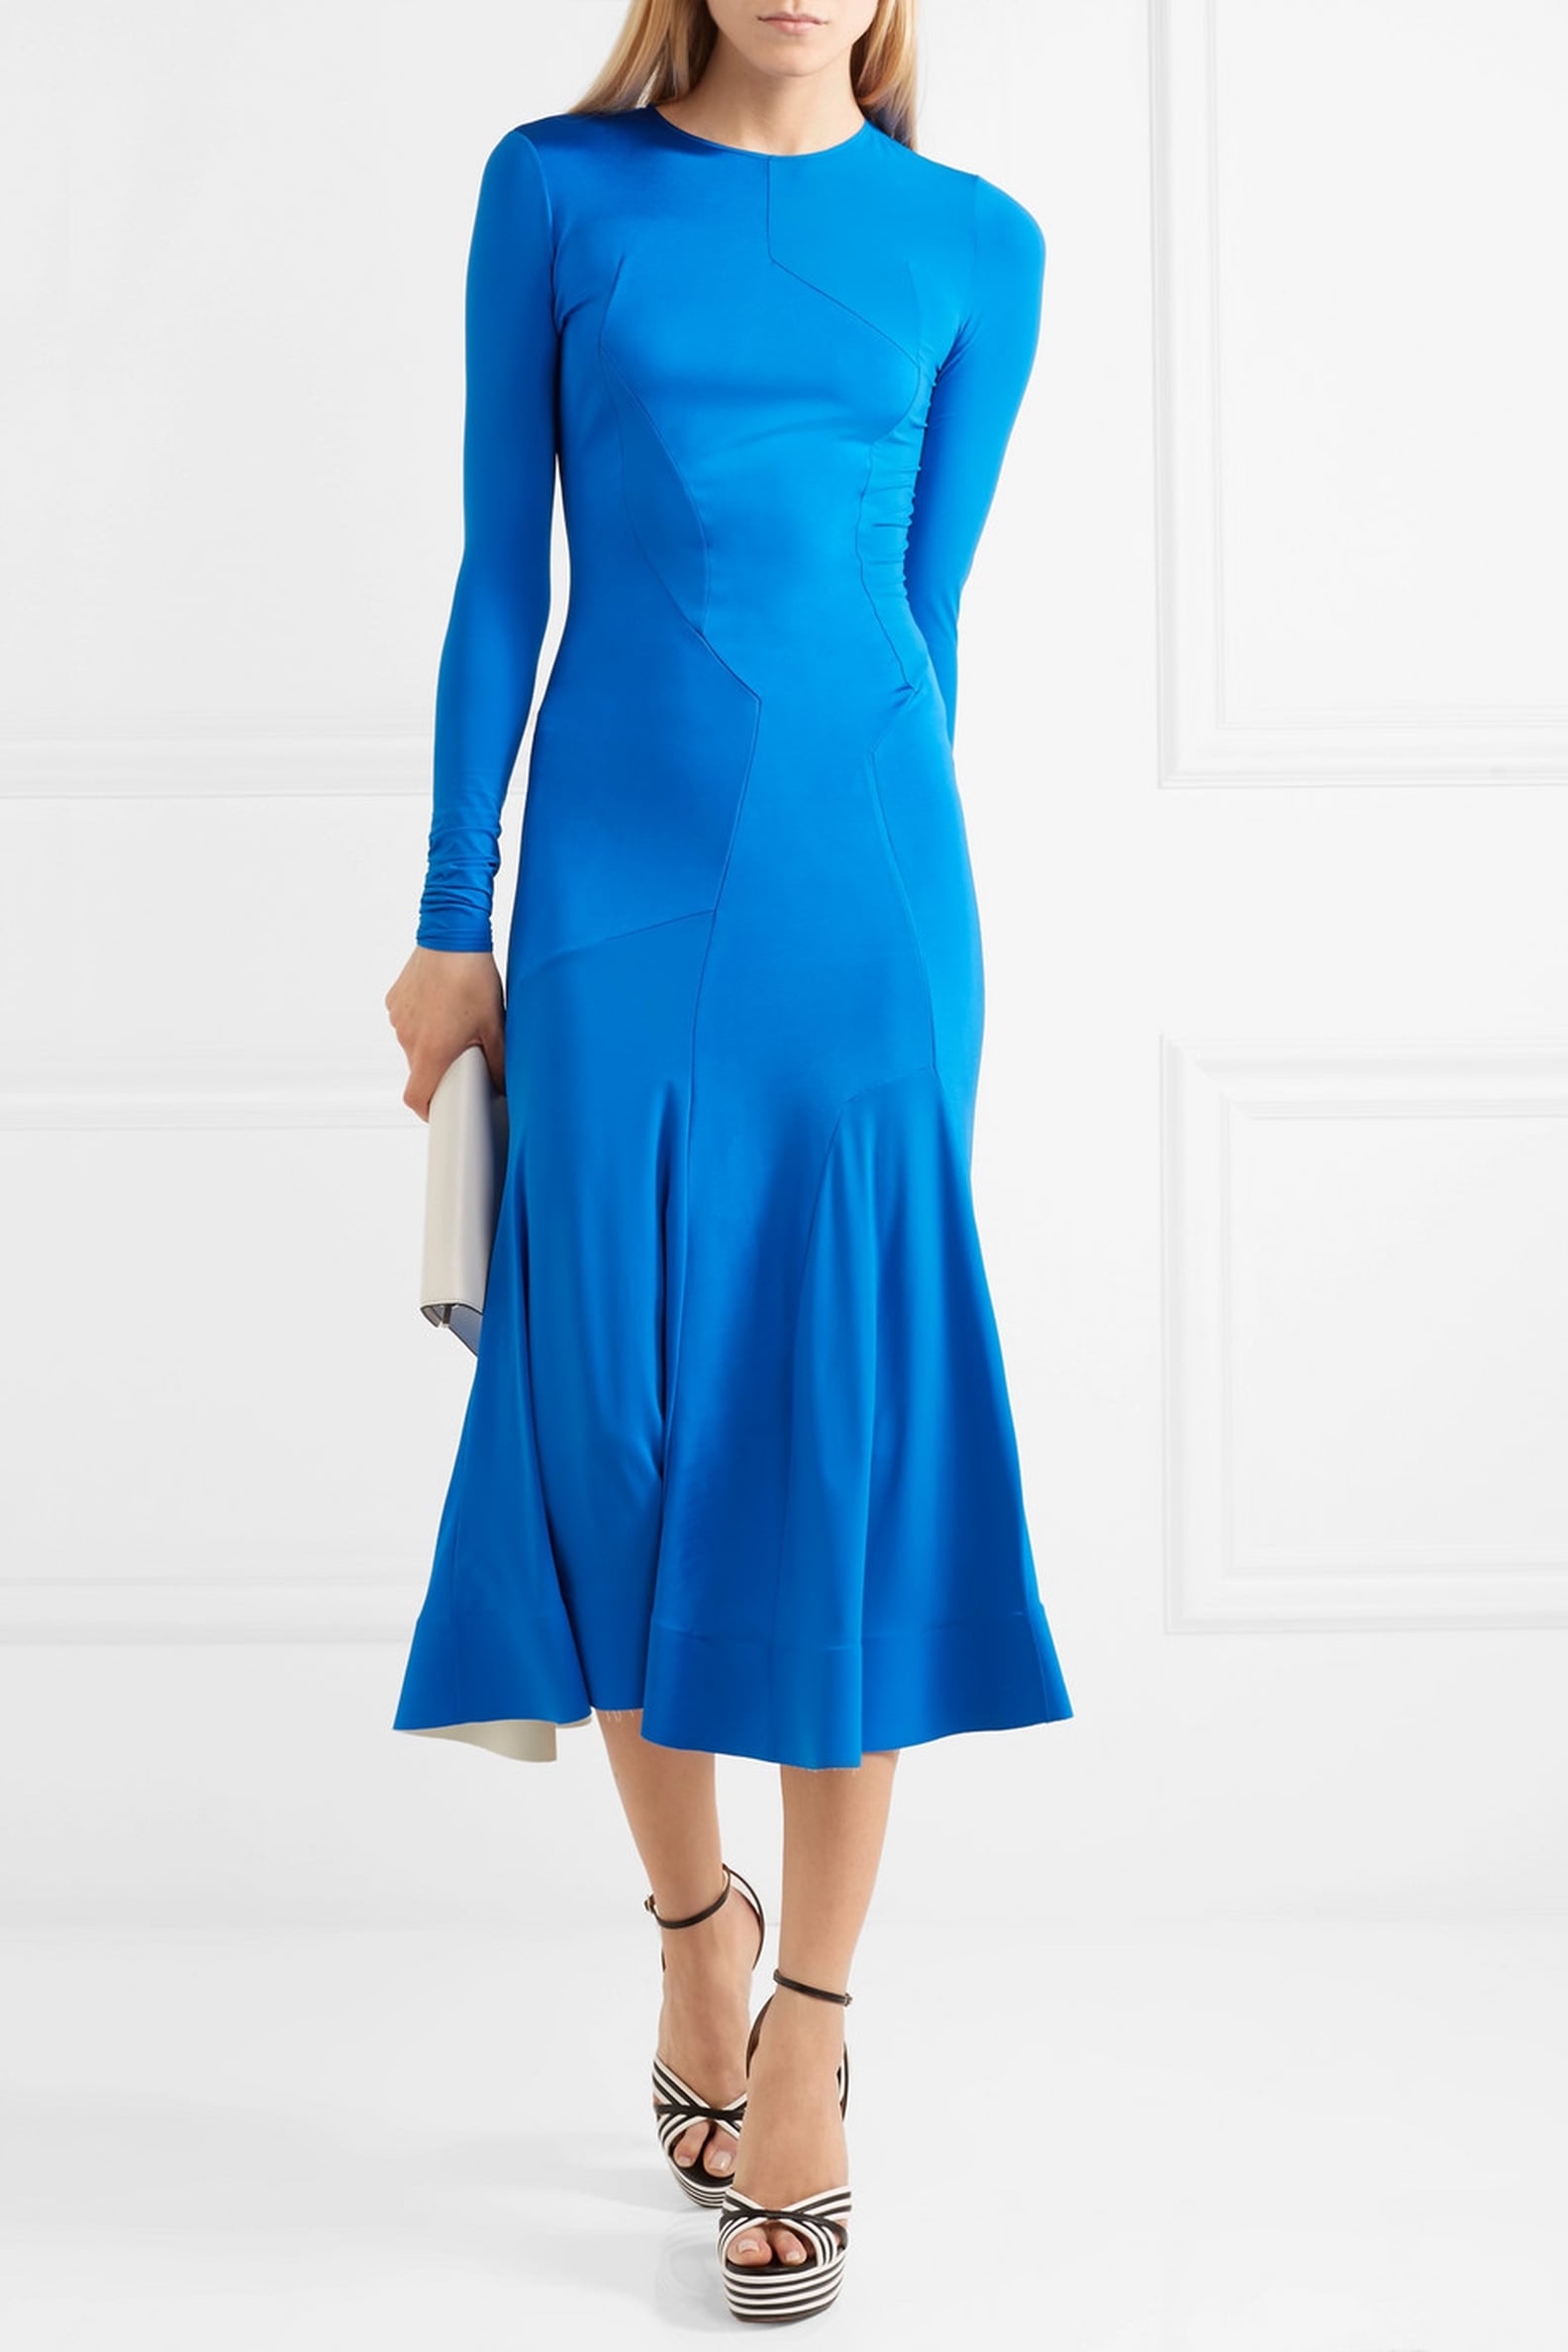 Amal Clooney's Blue Dress May 2018 | POPSUGAR Fashion